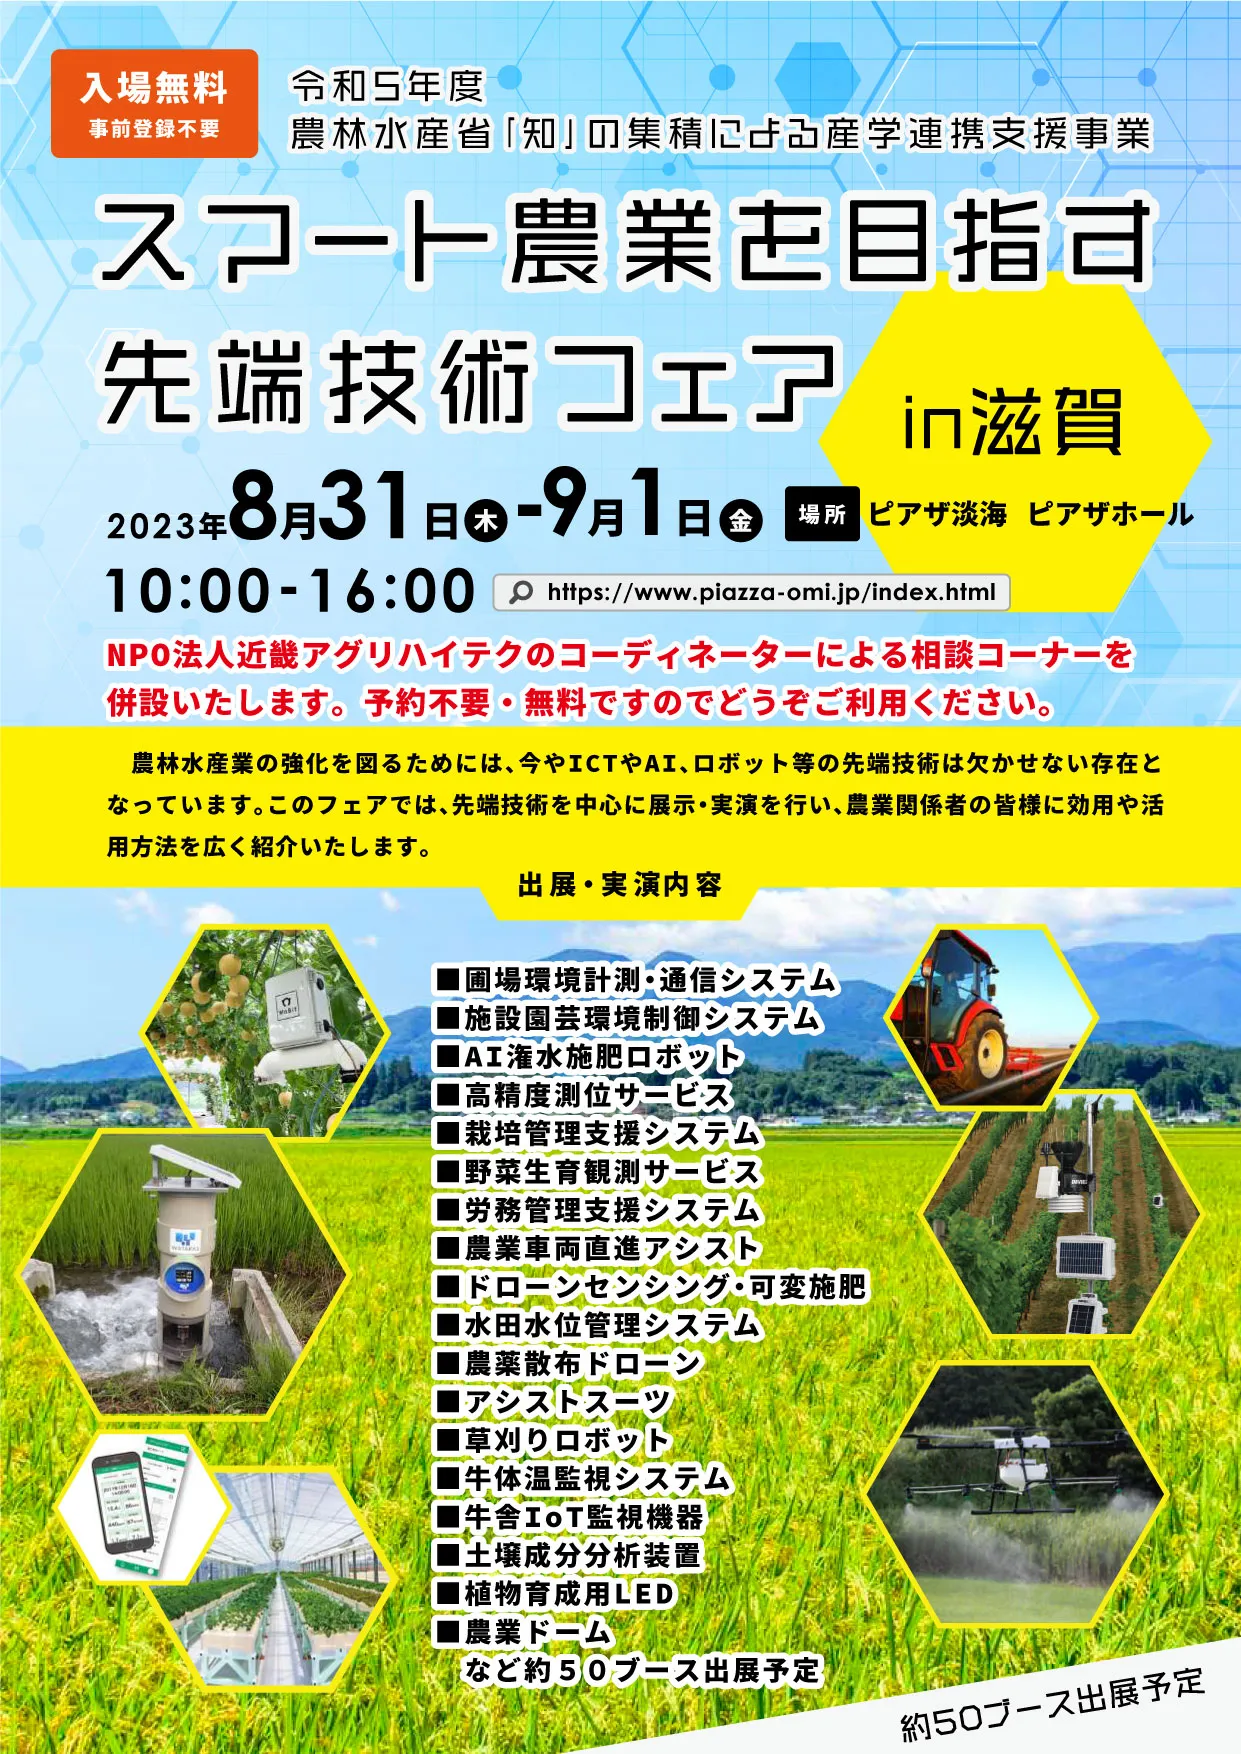 スマート農業を目指す先端技術フェア in 滋賀